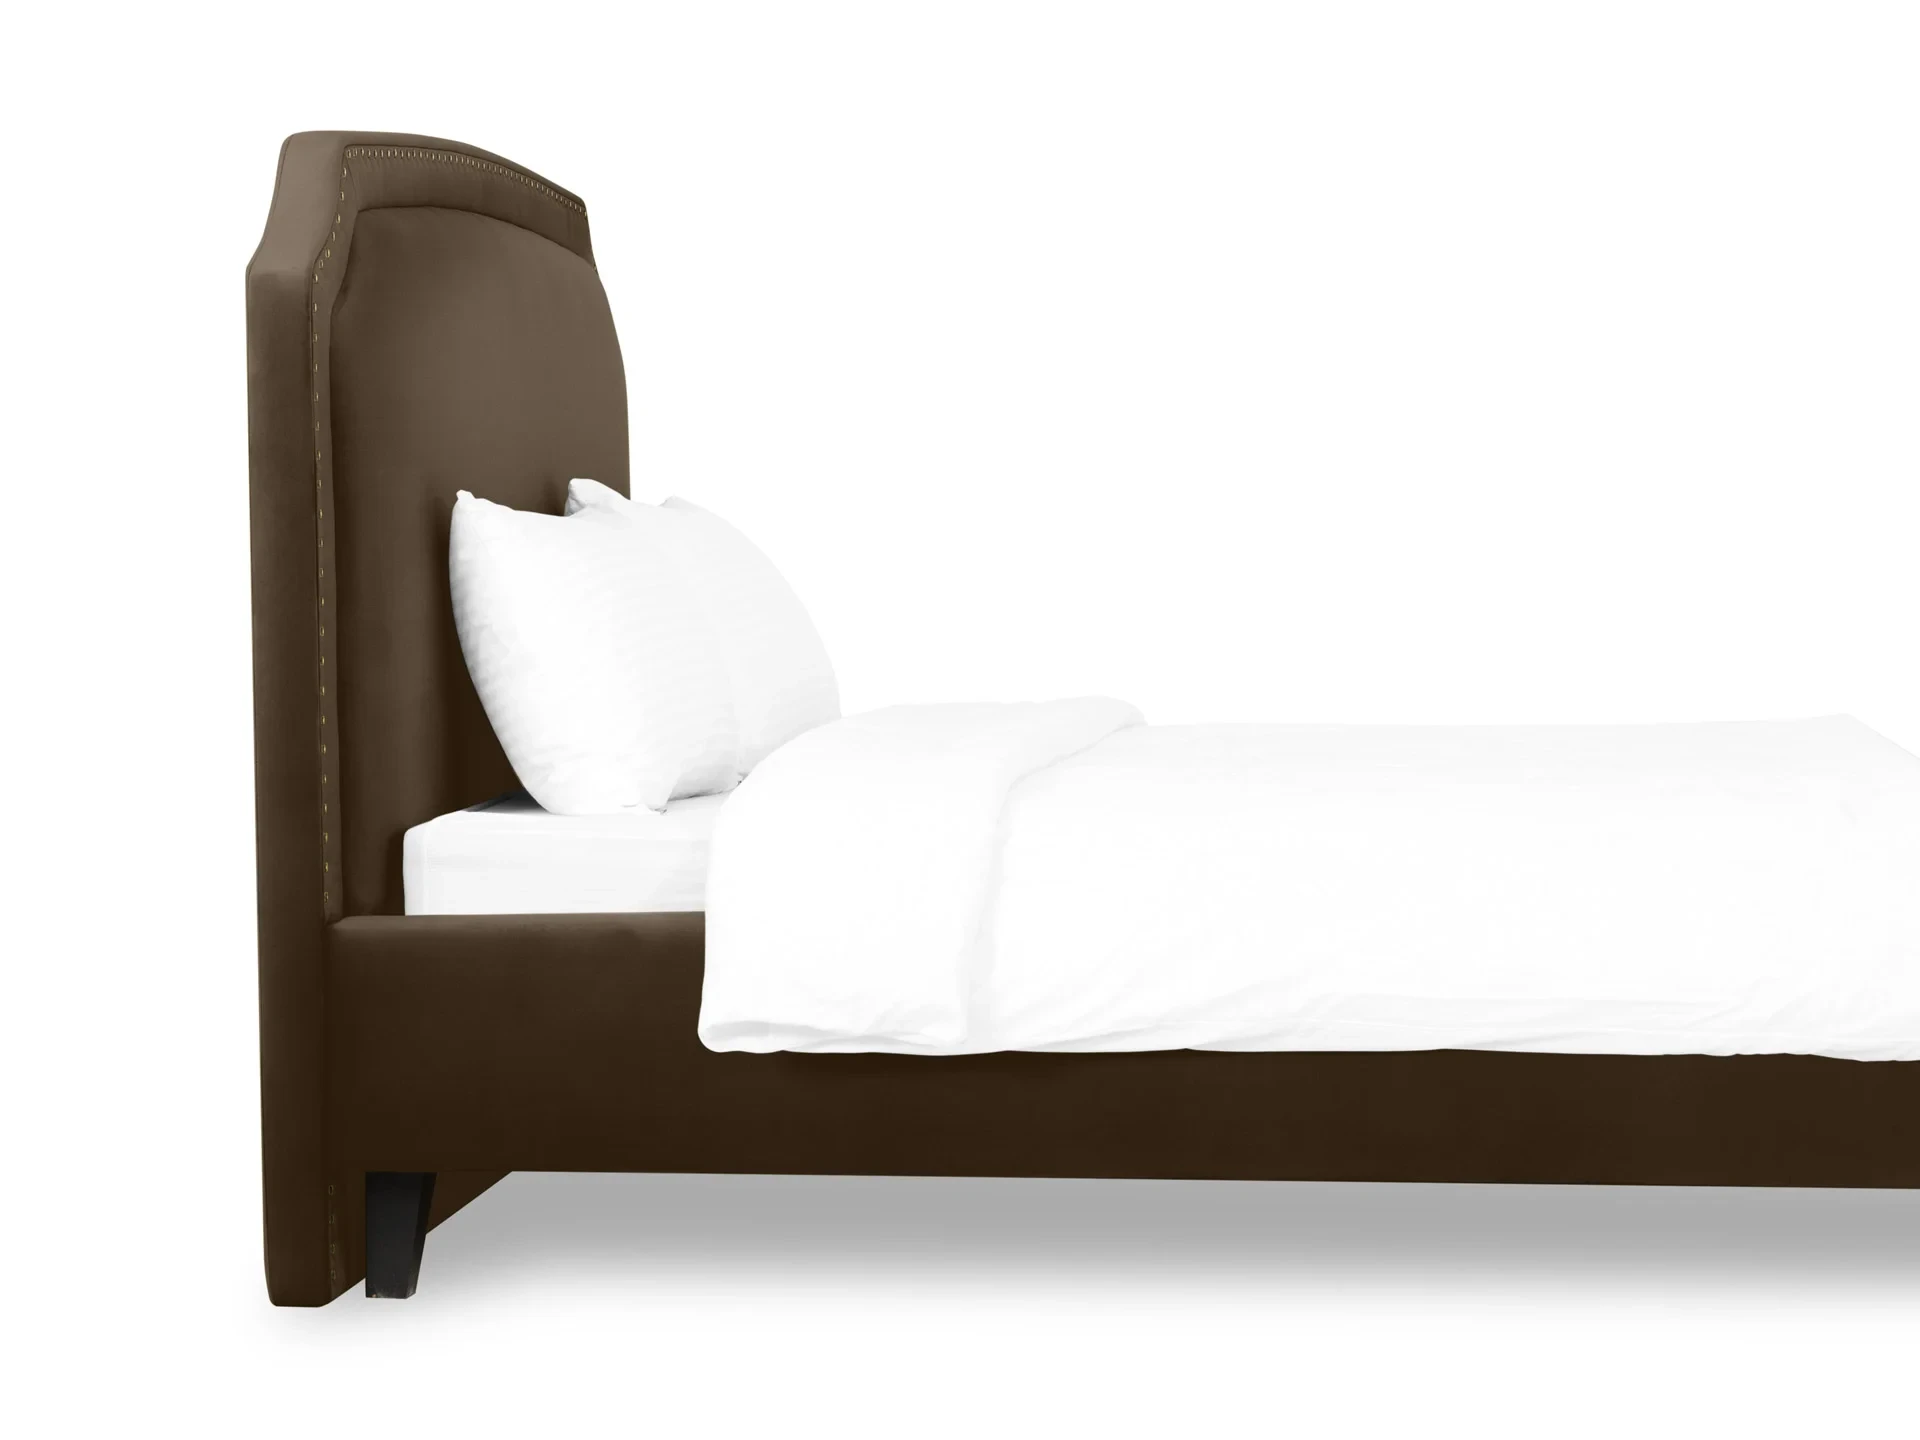 Кровать двуспальная Ruan 180х200 коричневый 652367